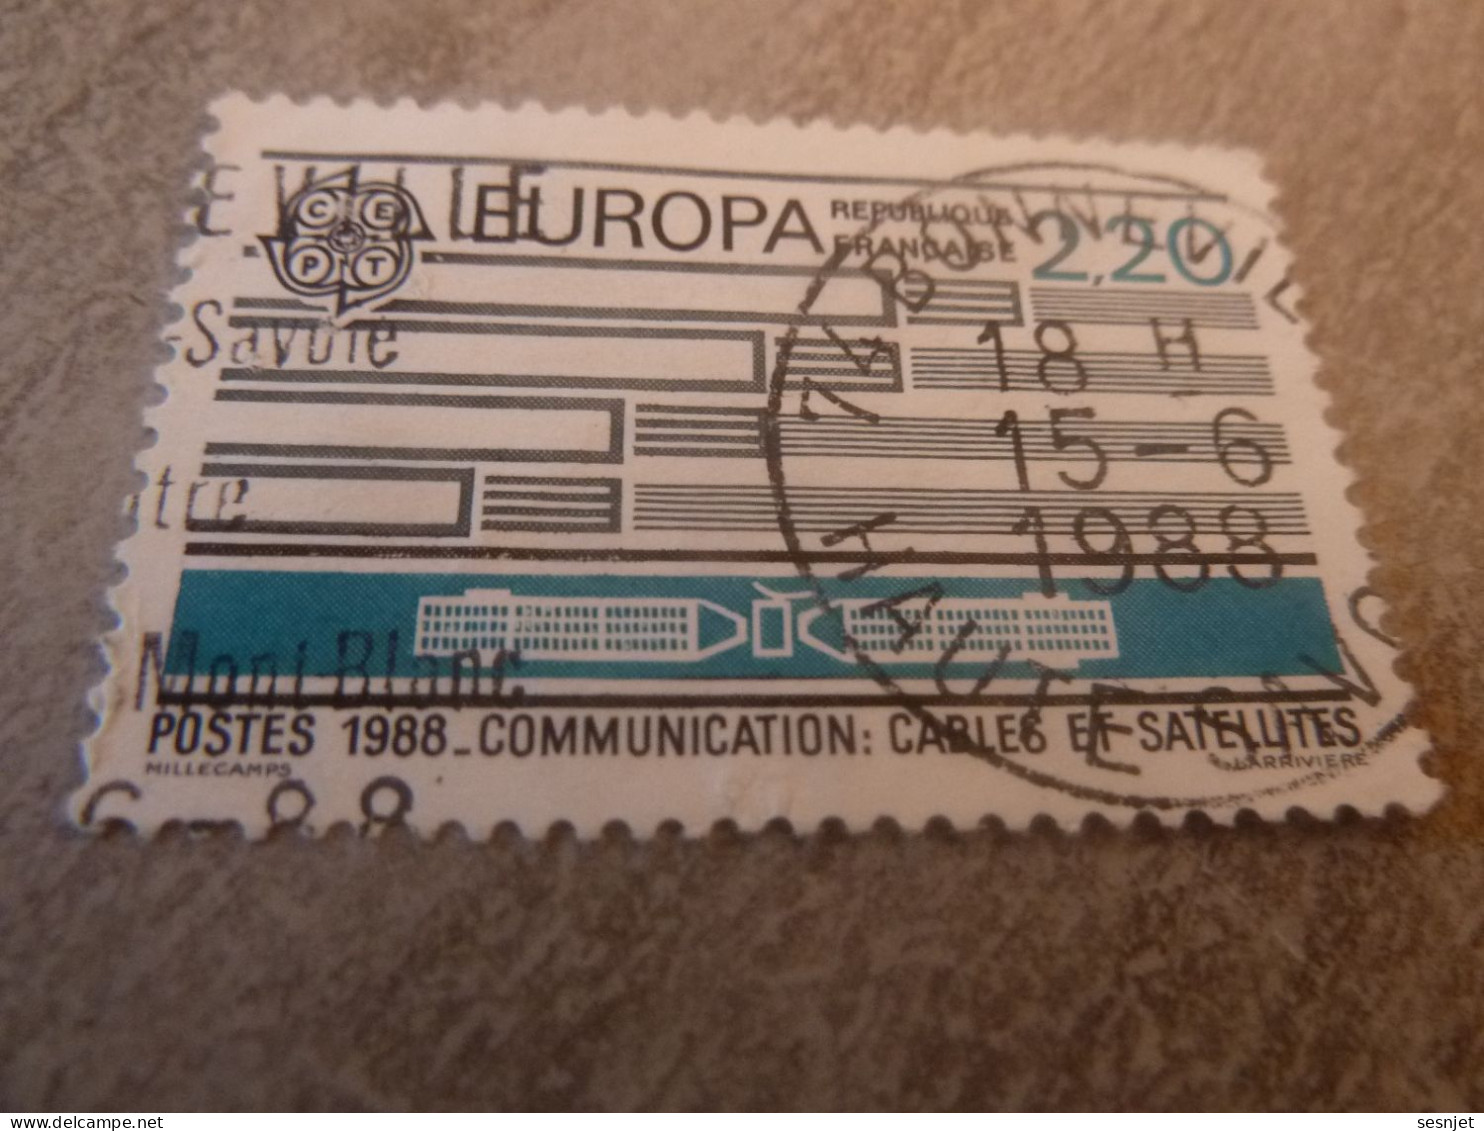 Europa - Transports Et Communications - 2f.20 - Yt 2531 - Bleu-vert Et Gris - Oblitéré - Année 1988 - - 1988